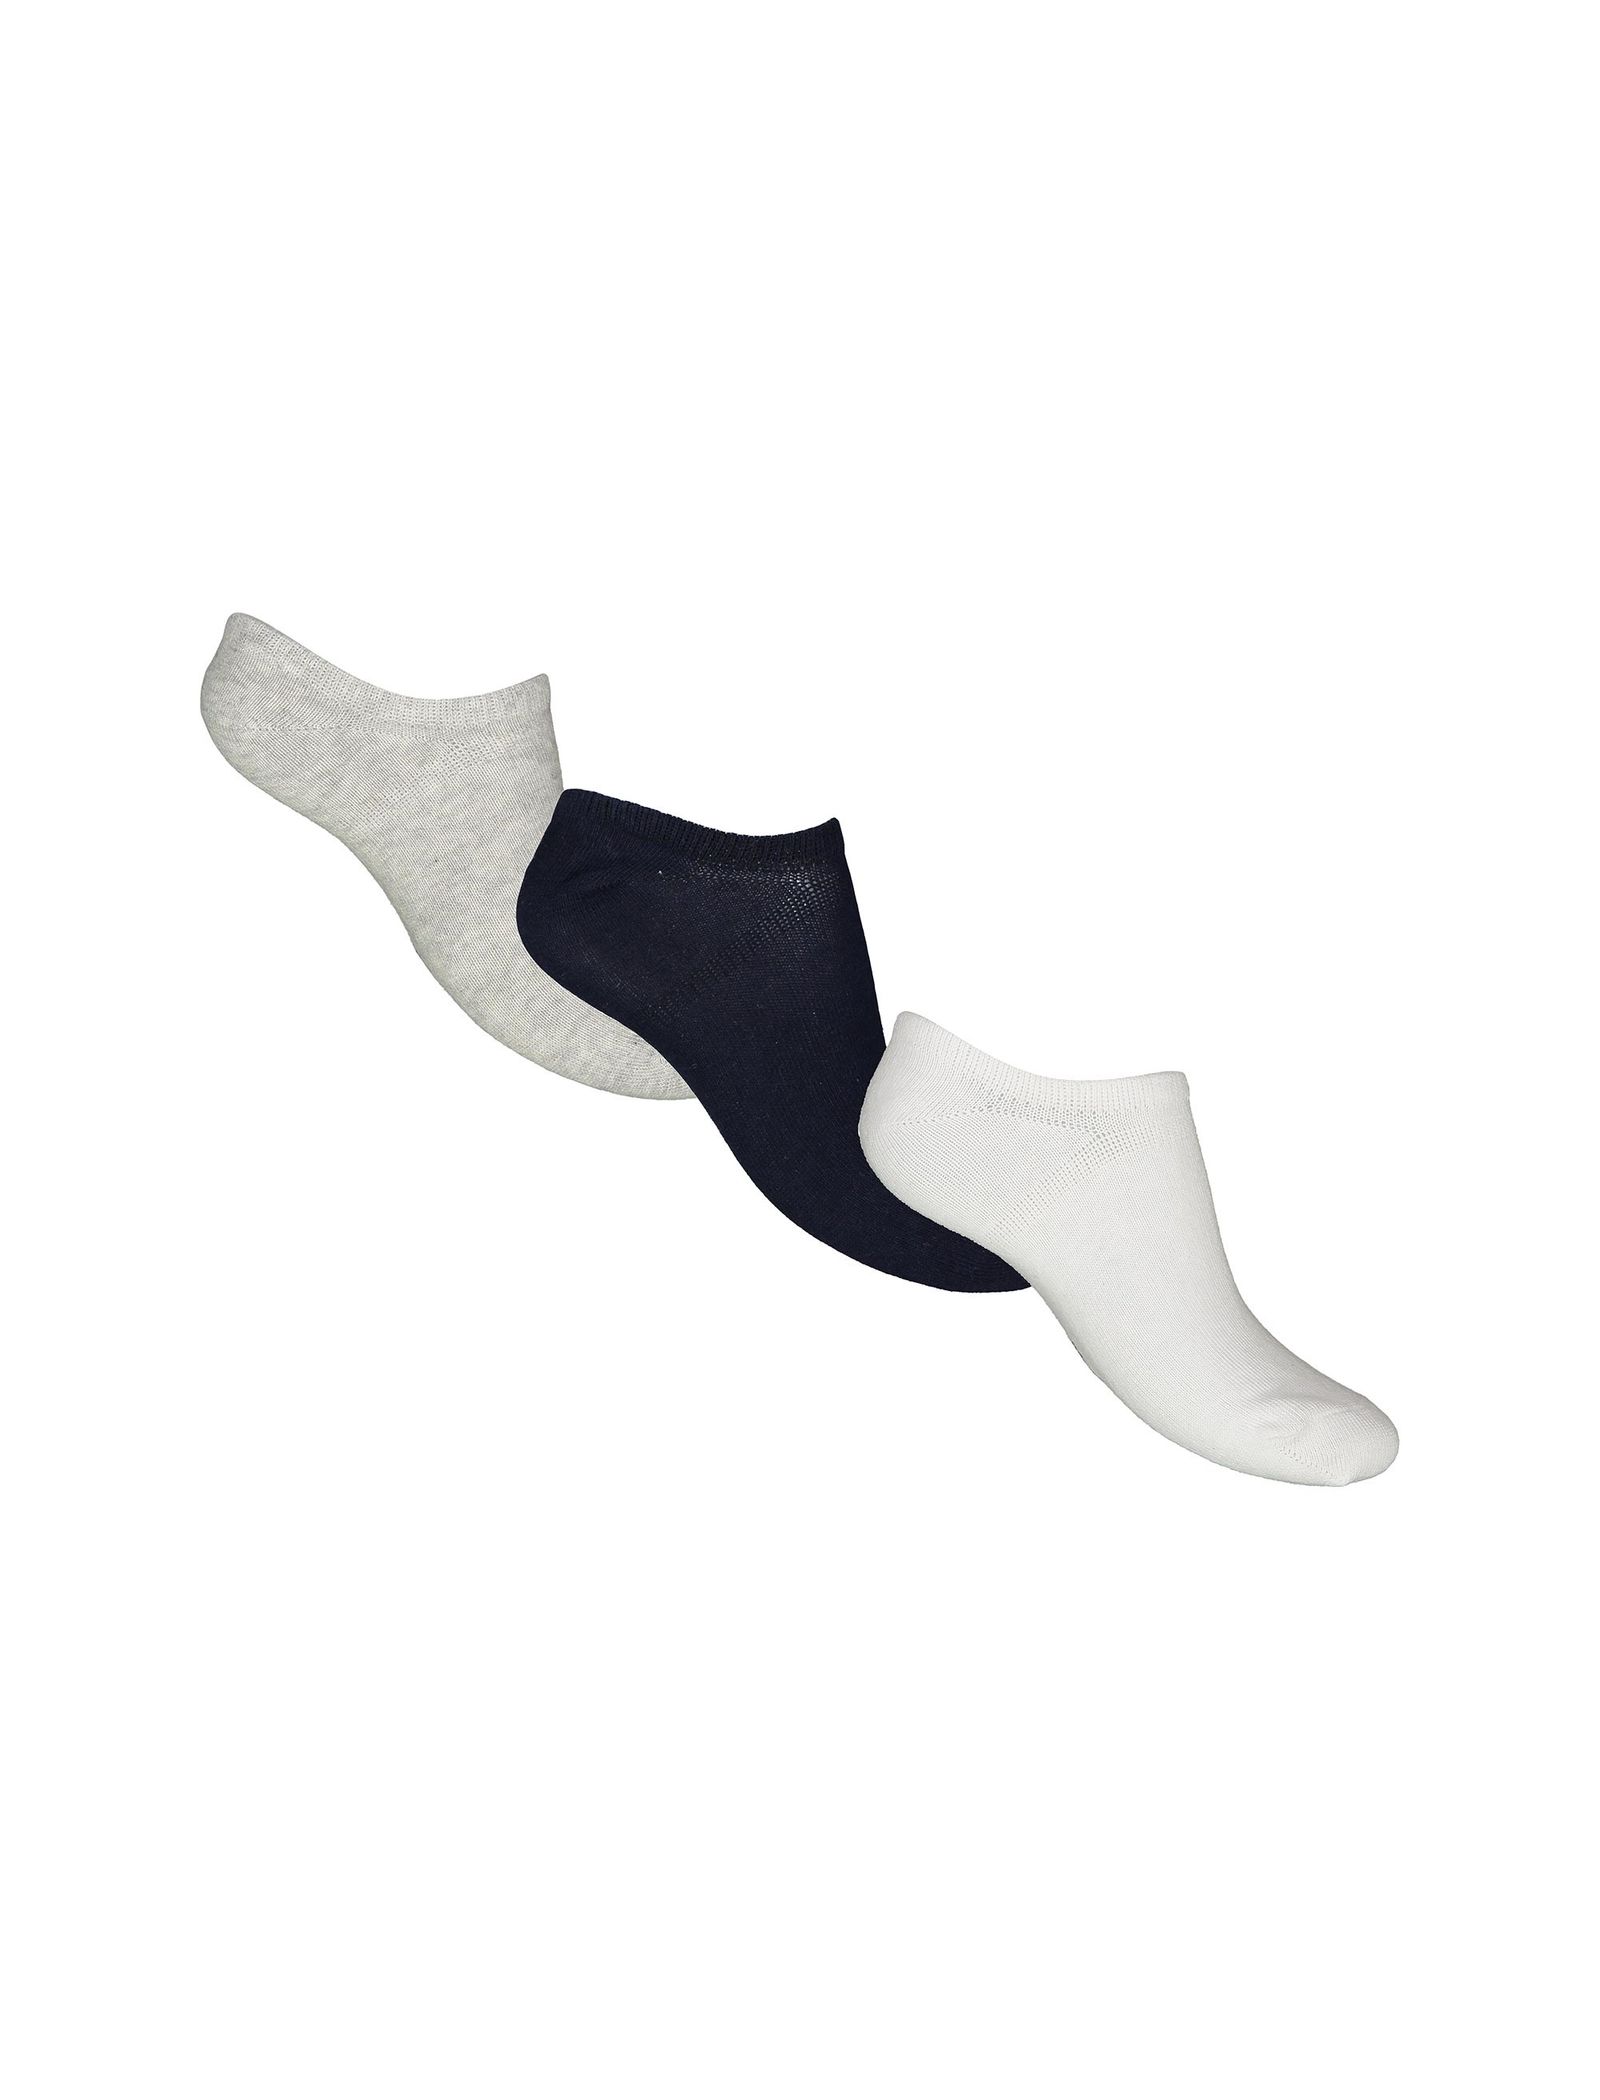 جوراب نخی بدون ساق بچگانه بسته 3 عددی - بلوکیدز - سفيد/طوسي/سرمه اي - 1